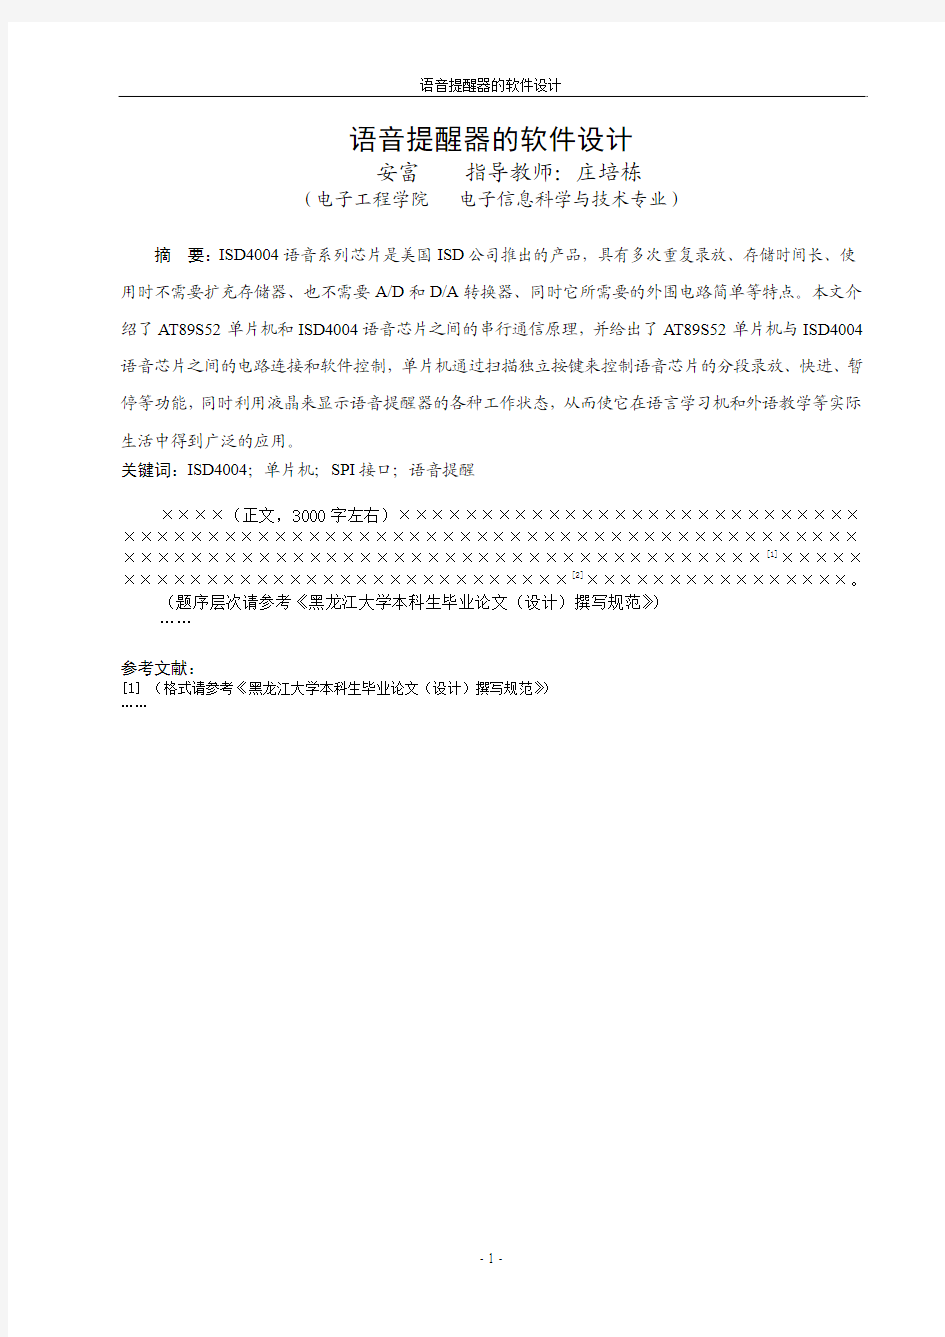 黑龙江大学本科生校级优秀毕业论文(设计)缩写稿格式样式